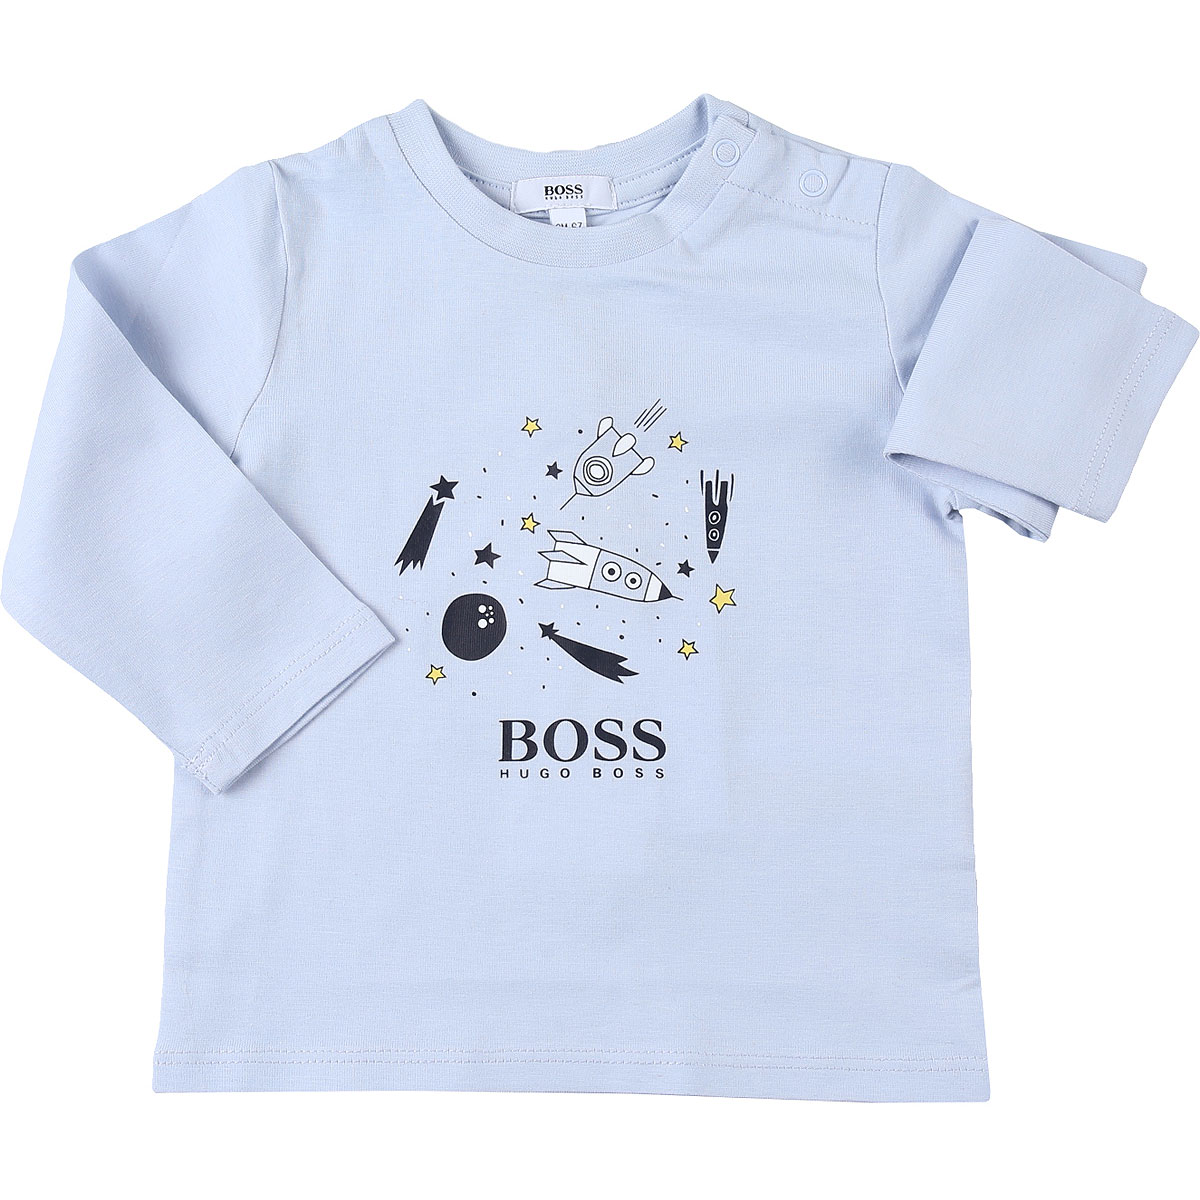 Hugo Boss Baby T-Shirt für Jungen Günstig im Sale, Himmelblau., Baumwolle, 2017, 12 M 18M 3M 6M